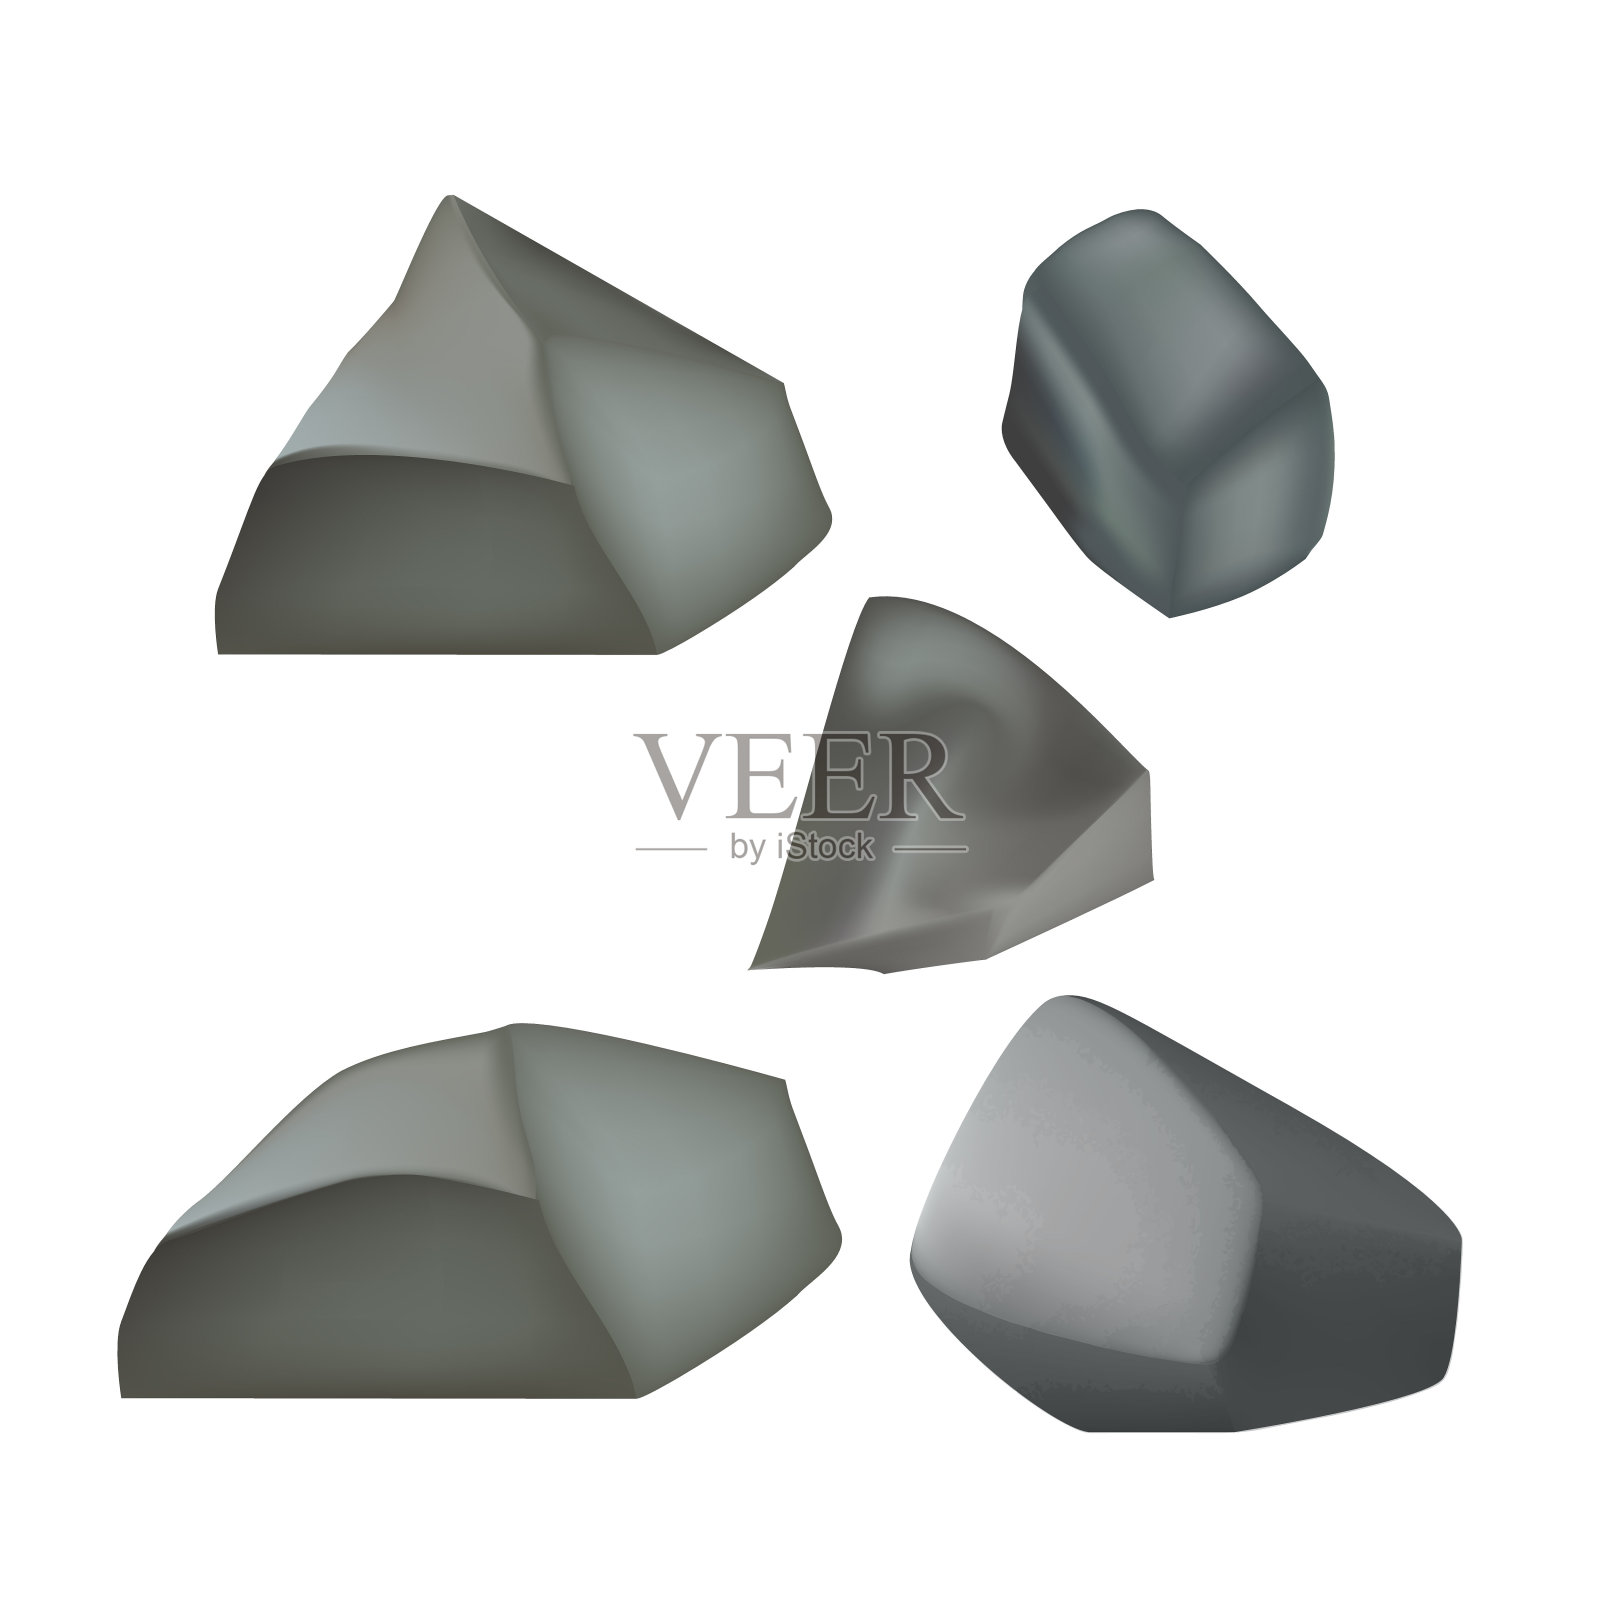 石头砾石鹅卵石不同的形式集向量插画图片素材